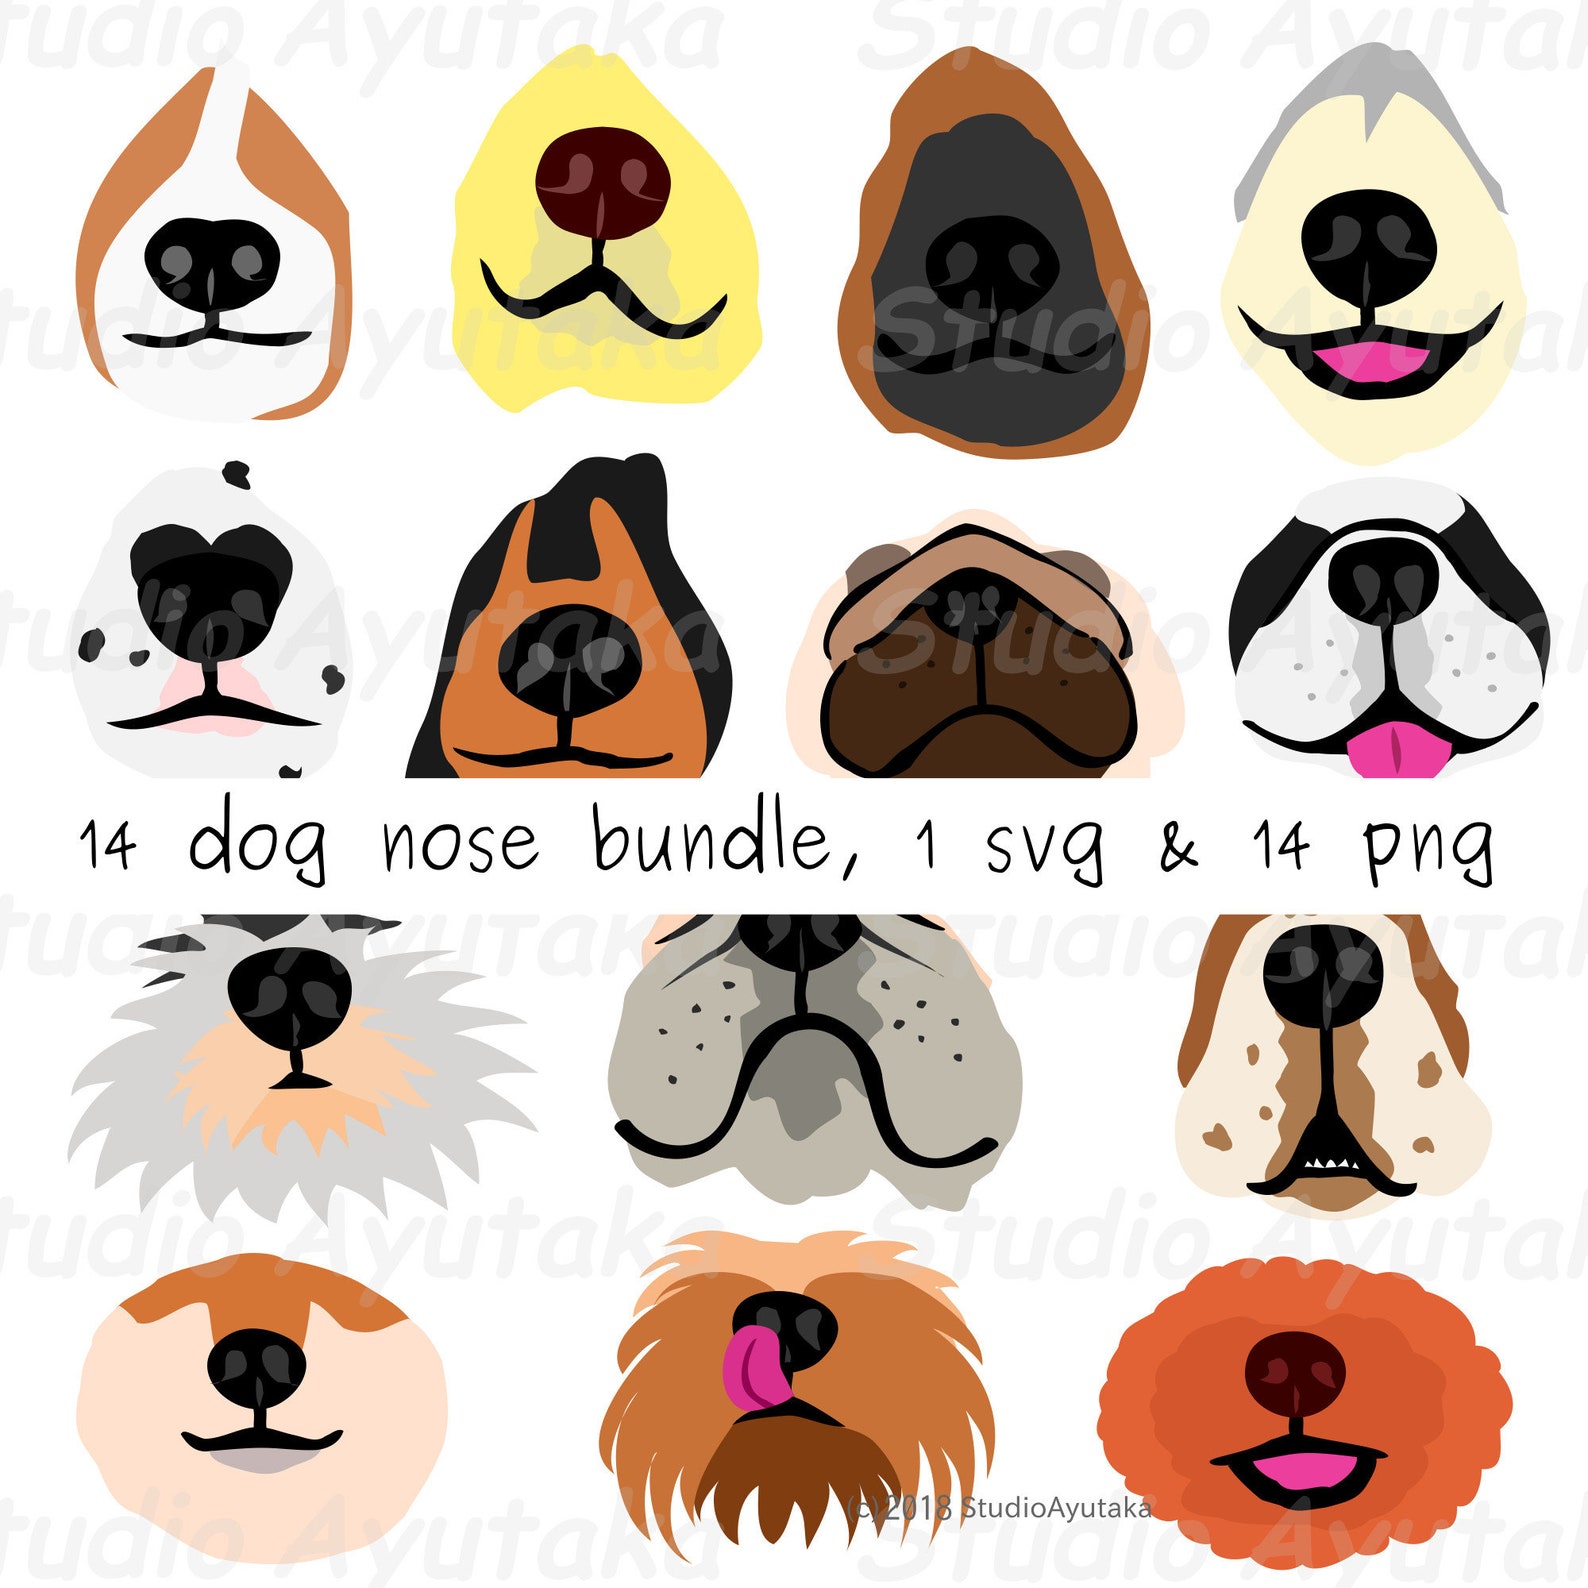 14 dog's nose bundle svg png | Etsy